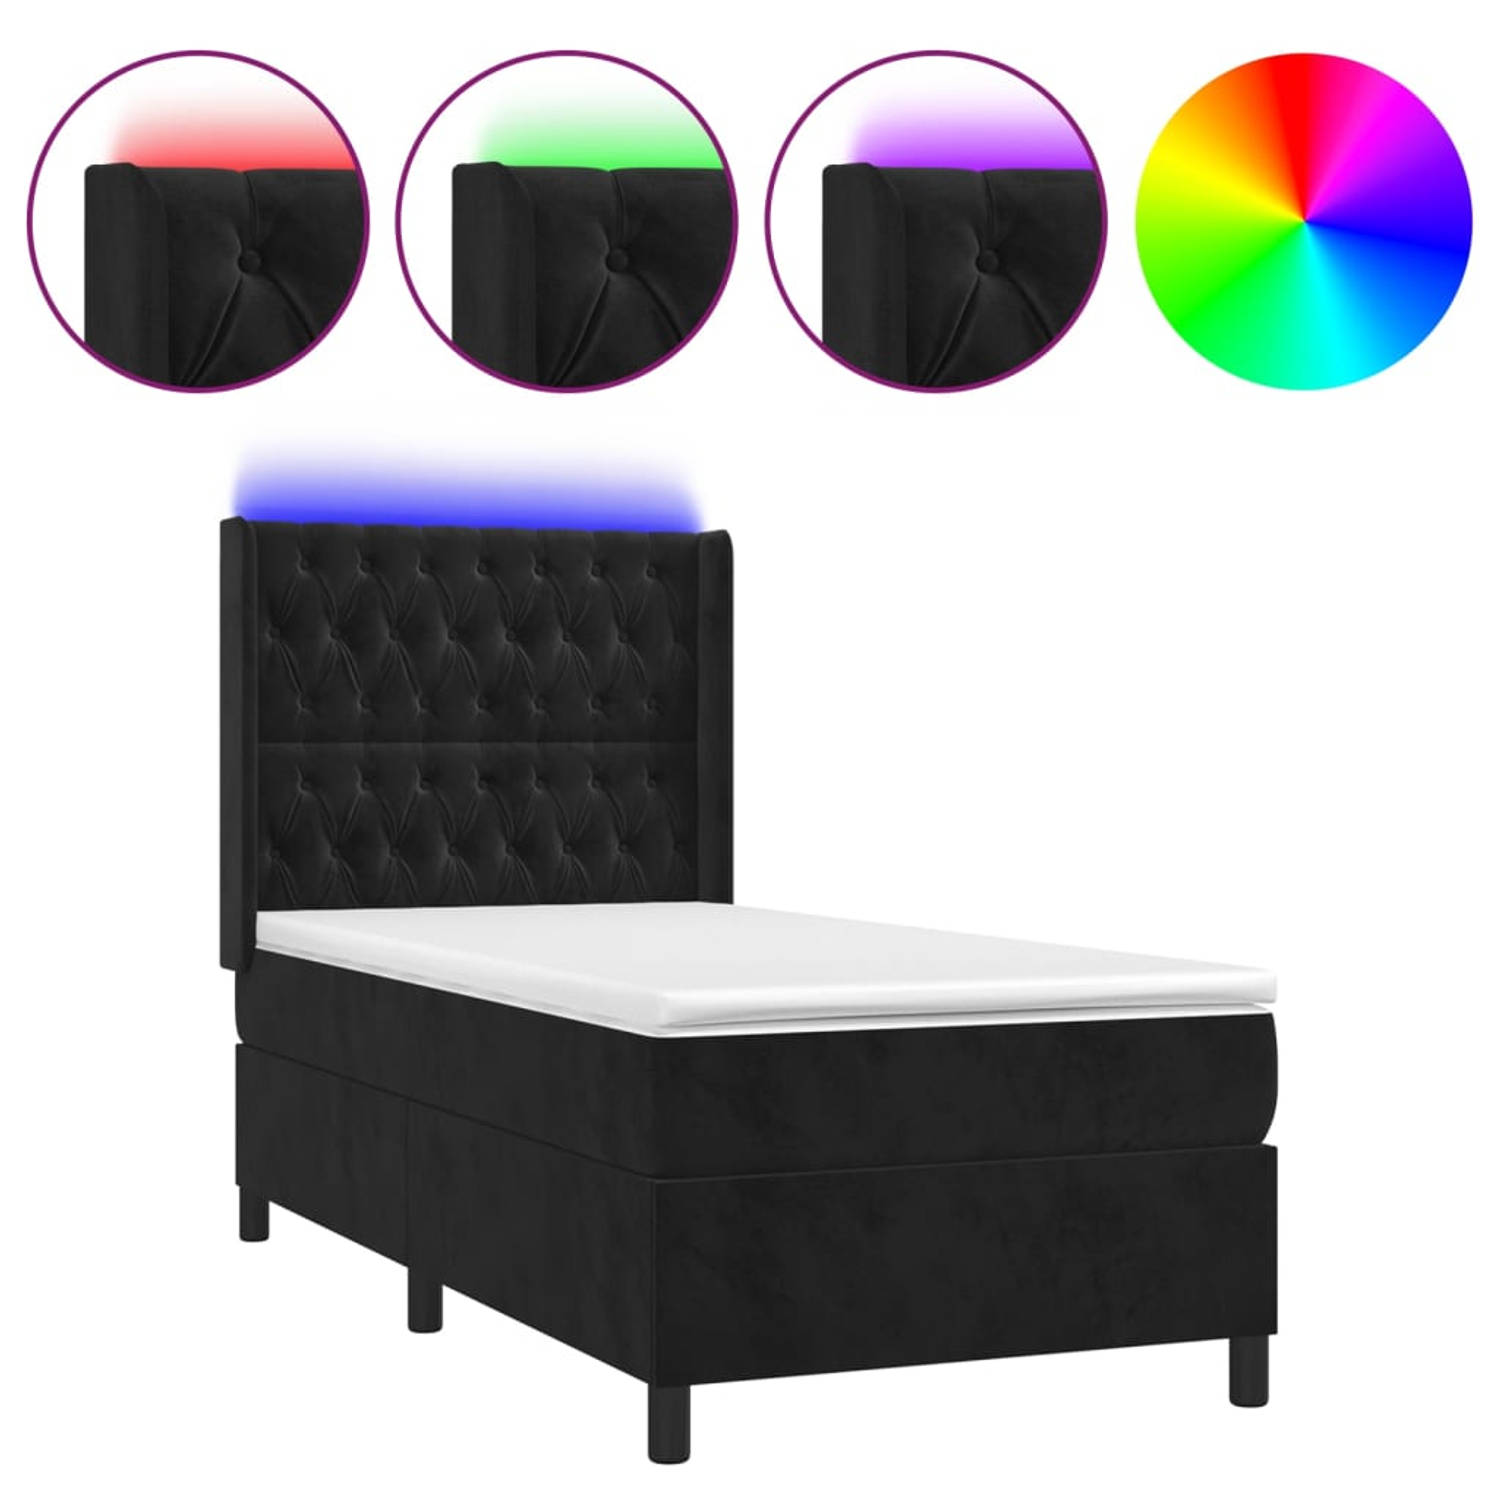 The Living Store Boxspring - Zwarte fluwelen bed met verstelbaar hoofdbord - Pocketvering matras - Huidvriendelijk topmatras - Kleurrijke LED-verlichting - Afmetingen 193x93x118/12